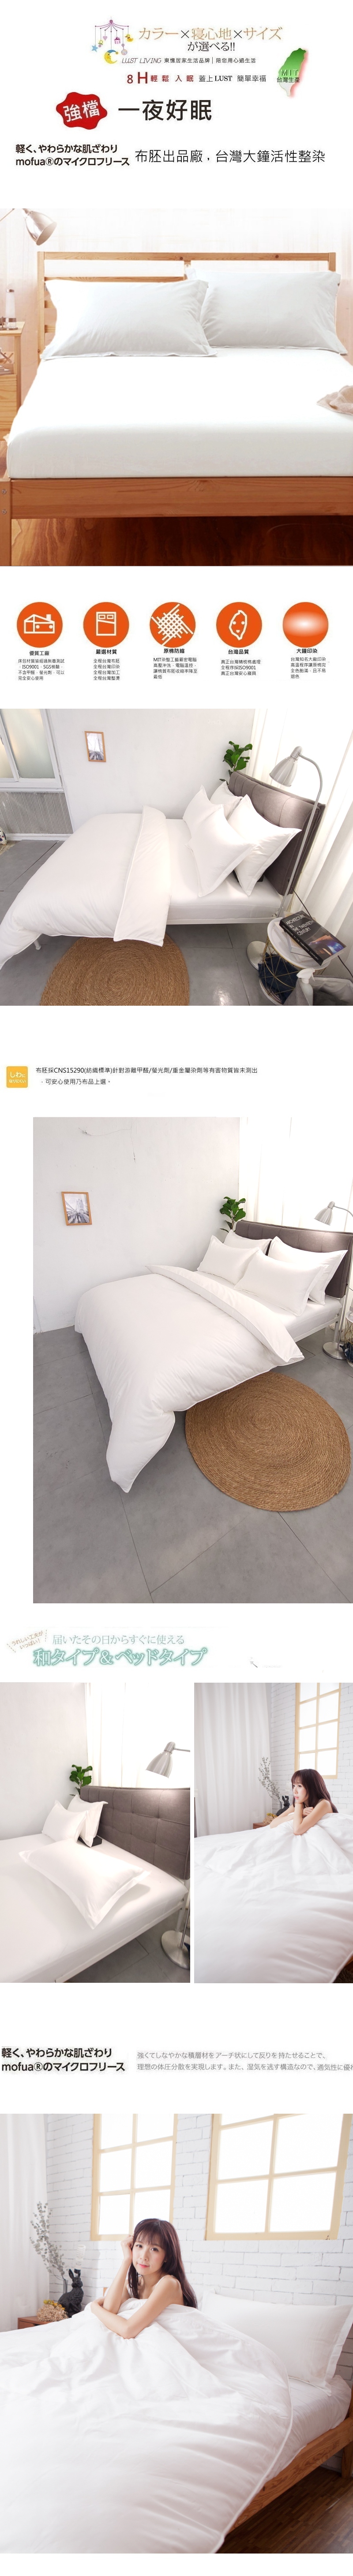 【LUST】素色簡約 純白/飯店白 100%純棉、雙人薄被套6x7尺、台灣製造